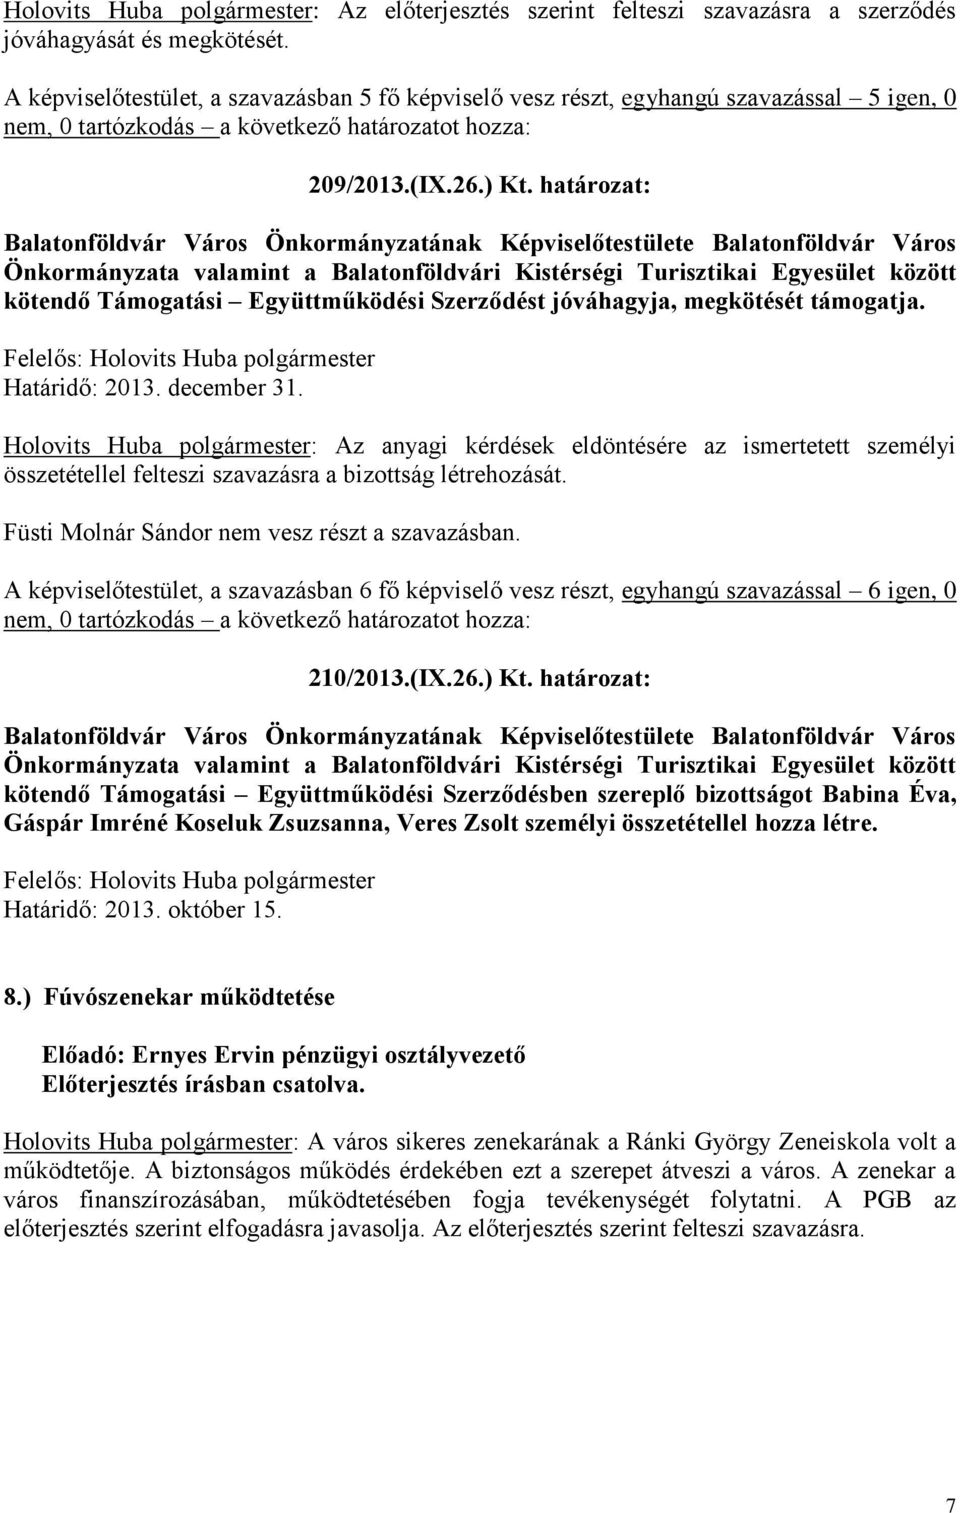 határozat: Balatonföldvár Város Önkormányzatának Képviselőtestülete Balatonföldvár Város Önkormányzata valamint a Balatonföldvári Kistérségi Turisztikai Egyesület között kötendő Támogatási